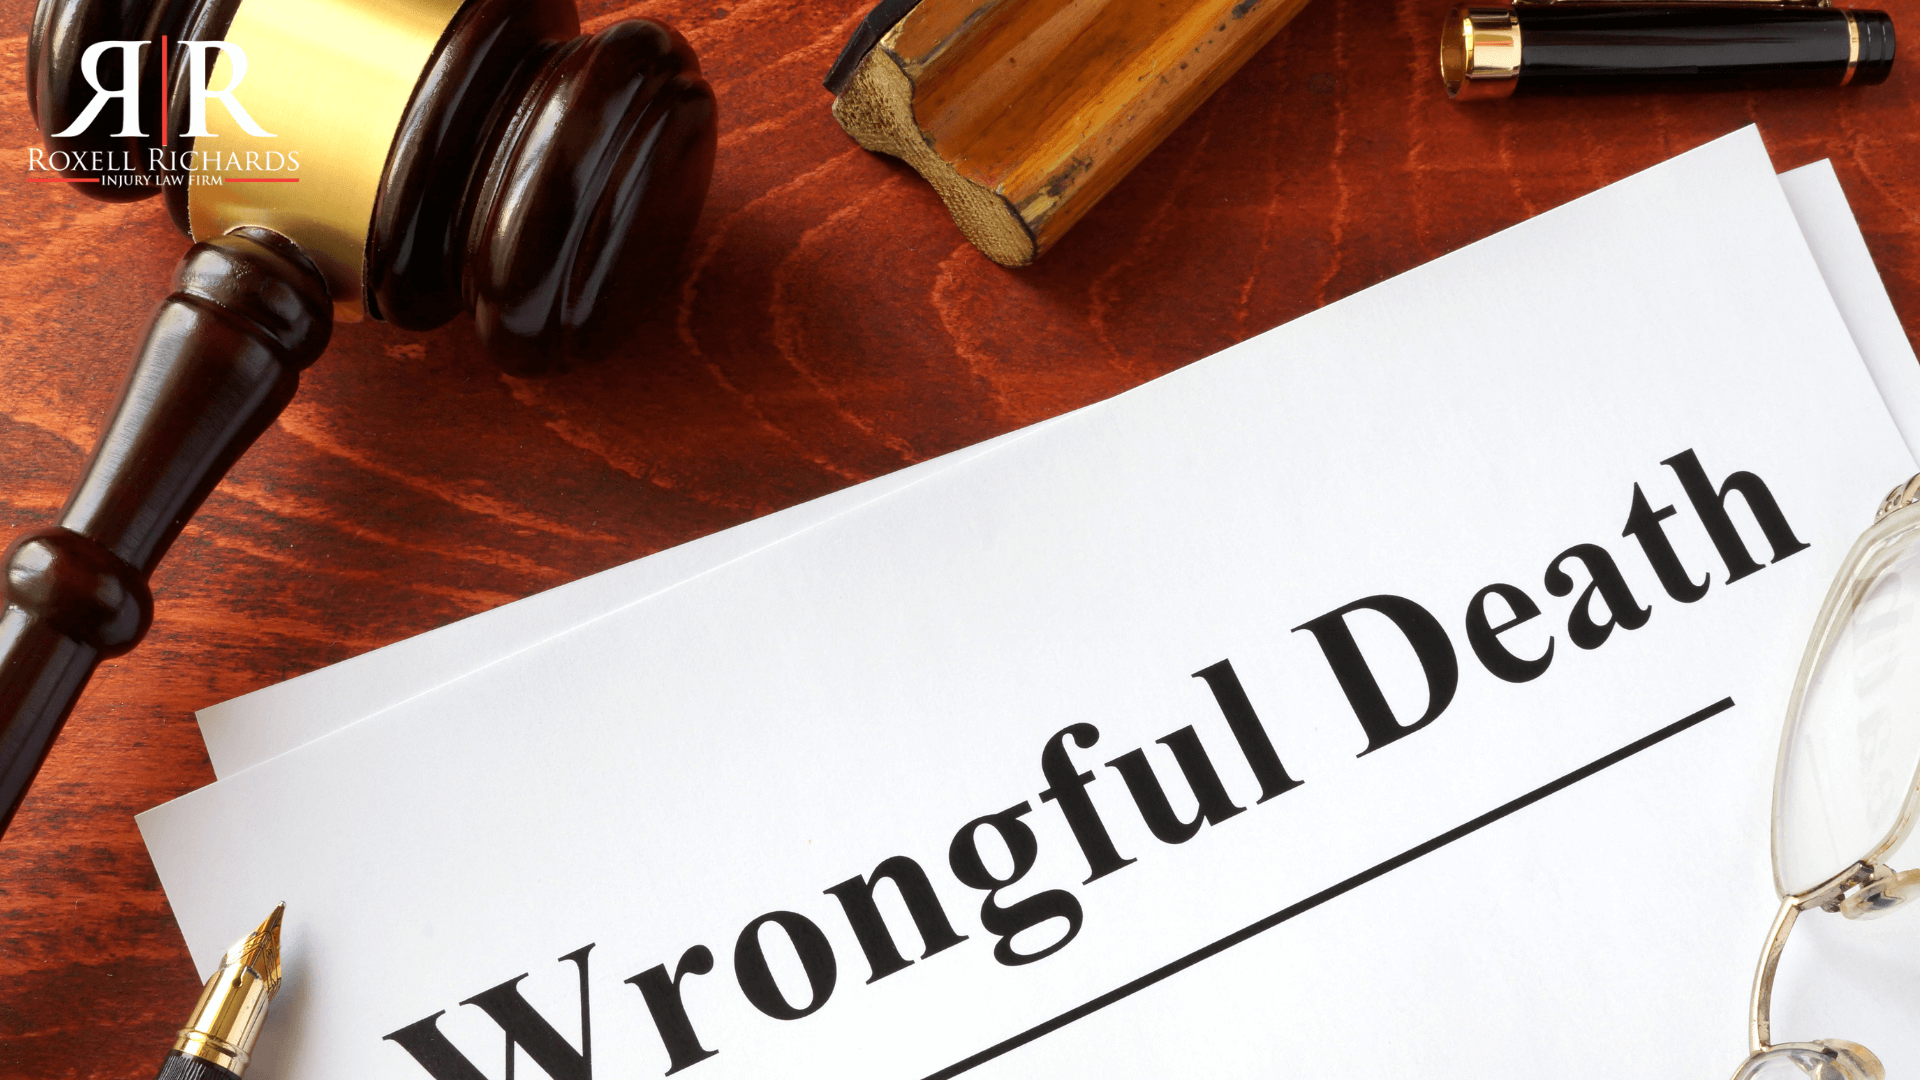 wrongful-death-lawsuit